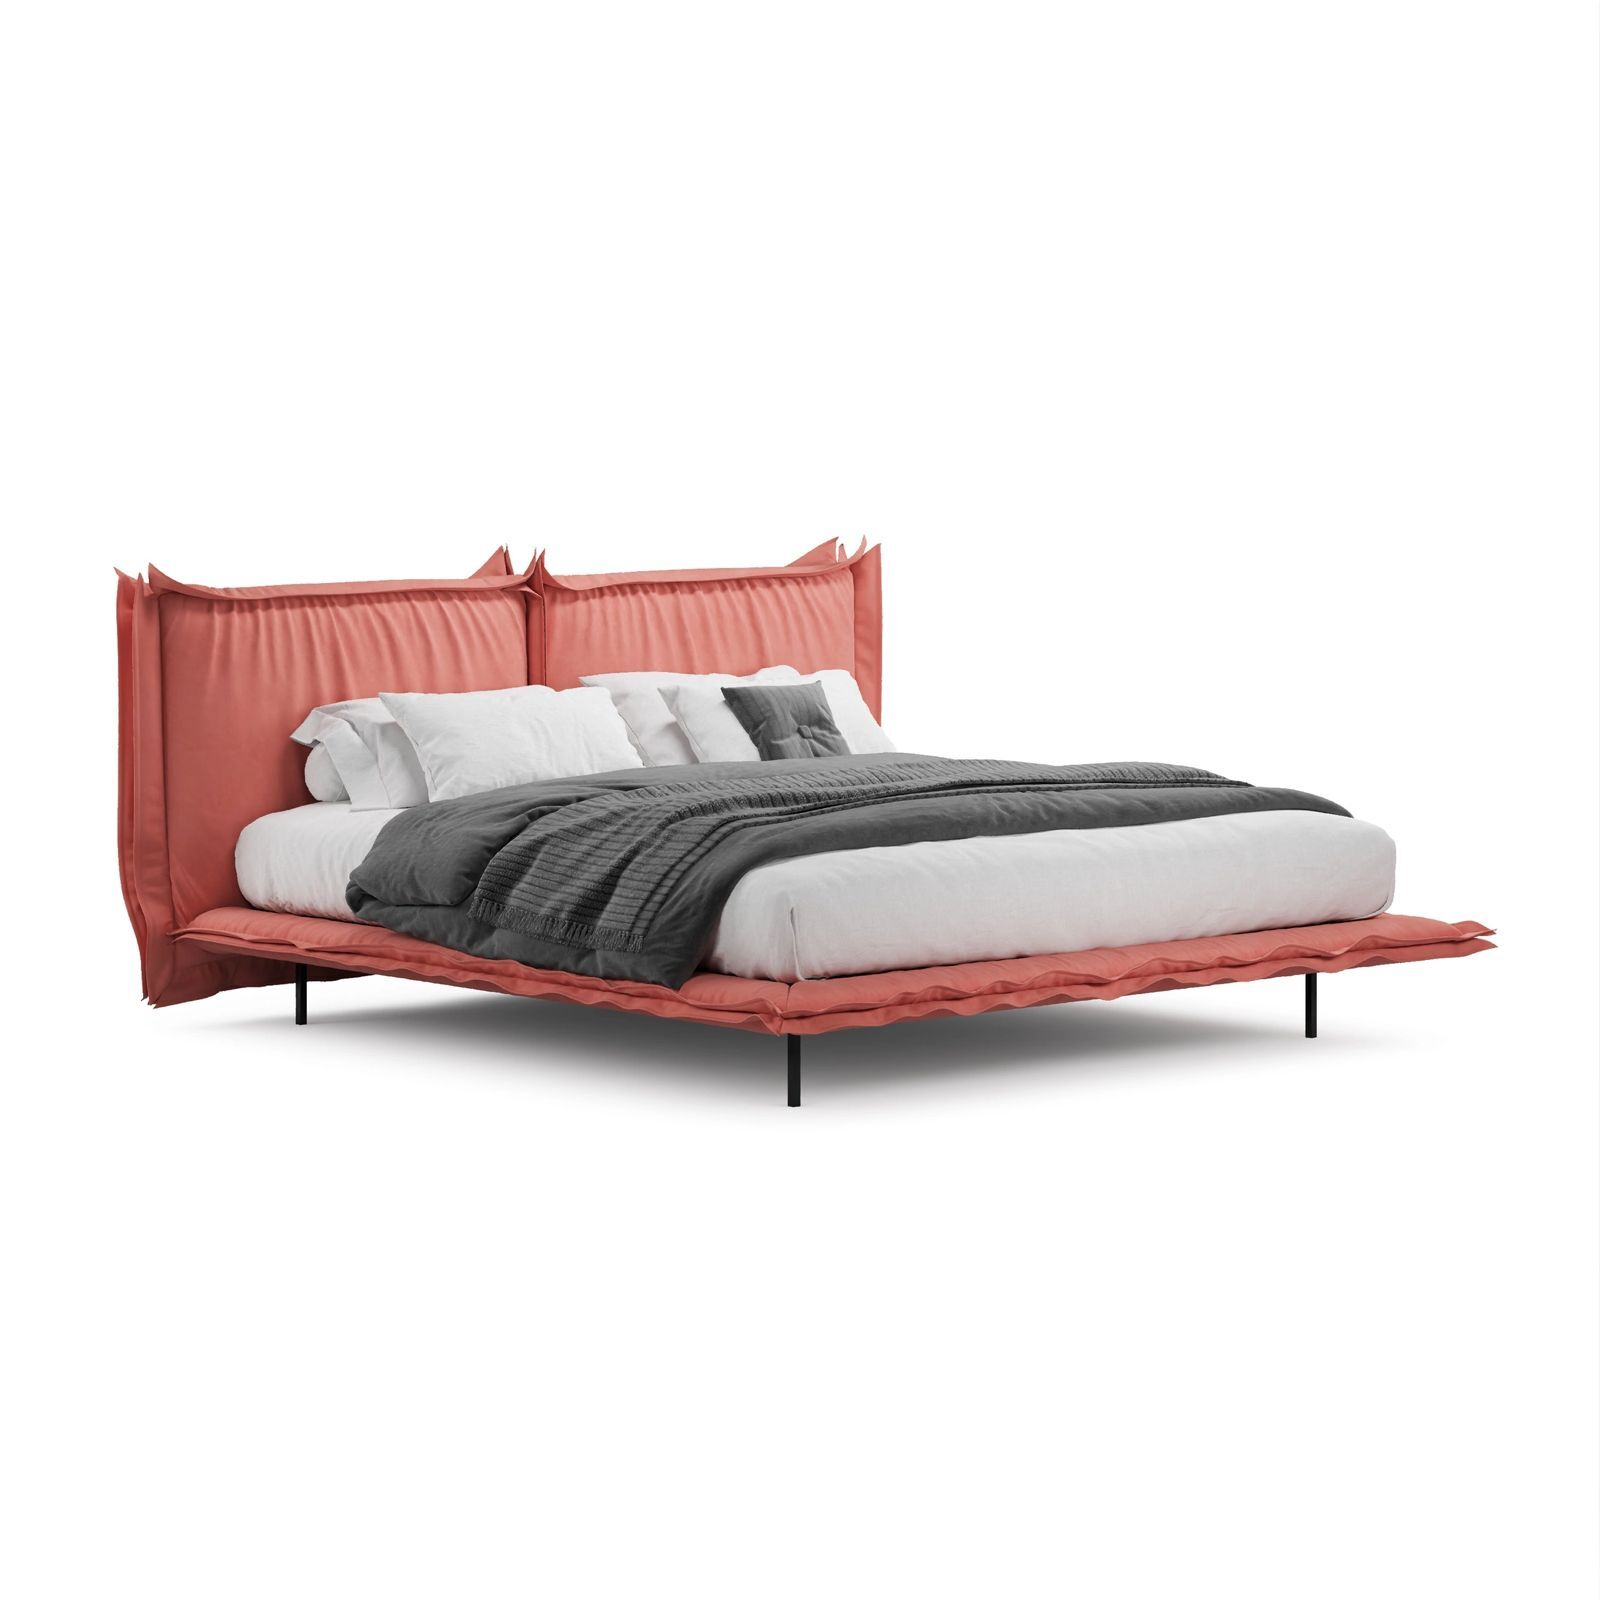 Easy mebel дизайнерские кровати от производителя